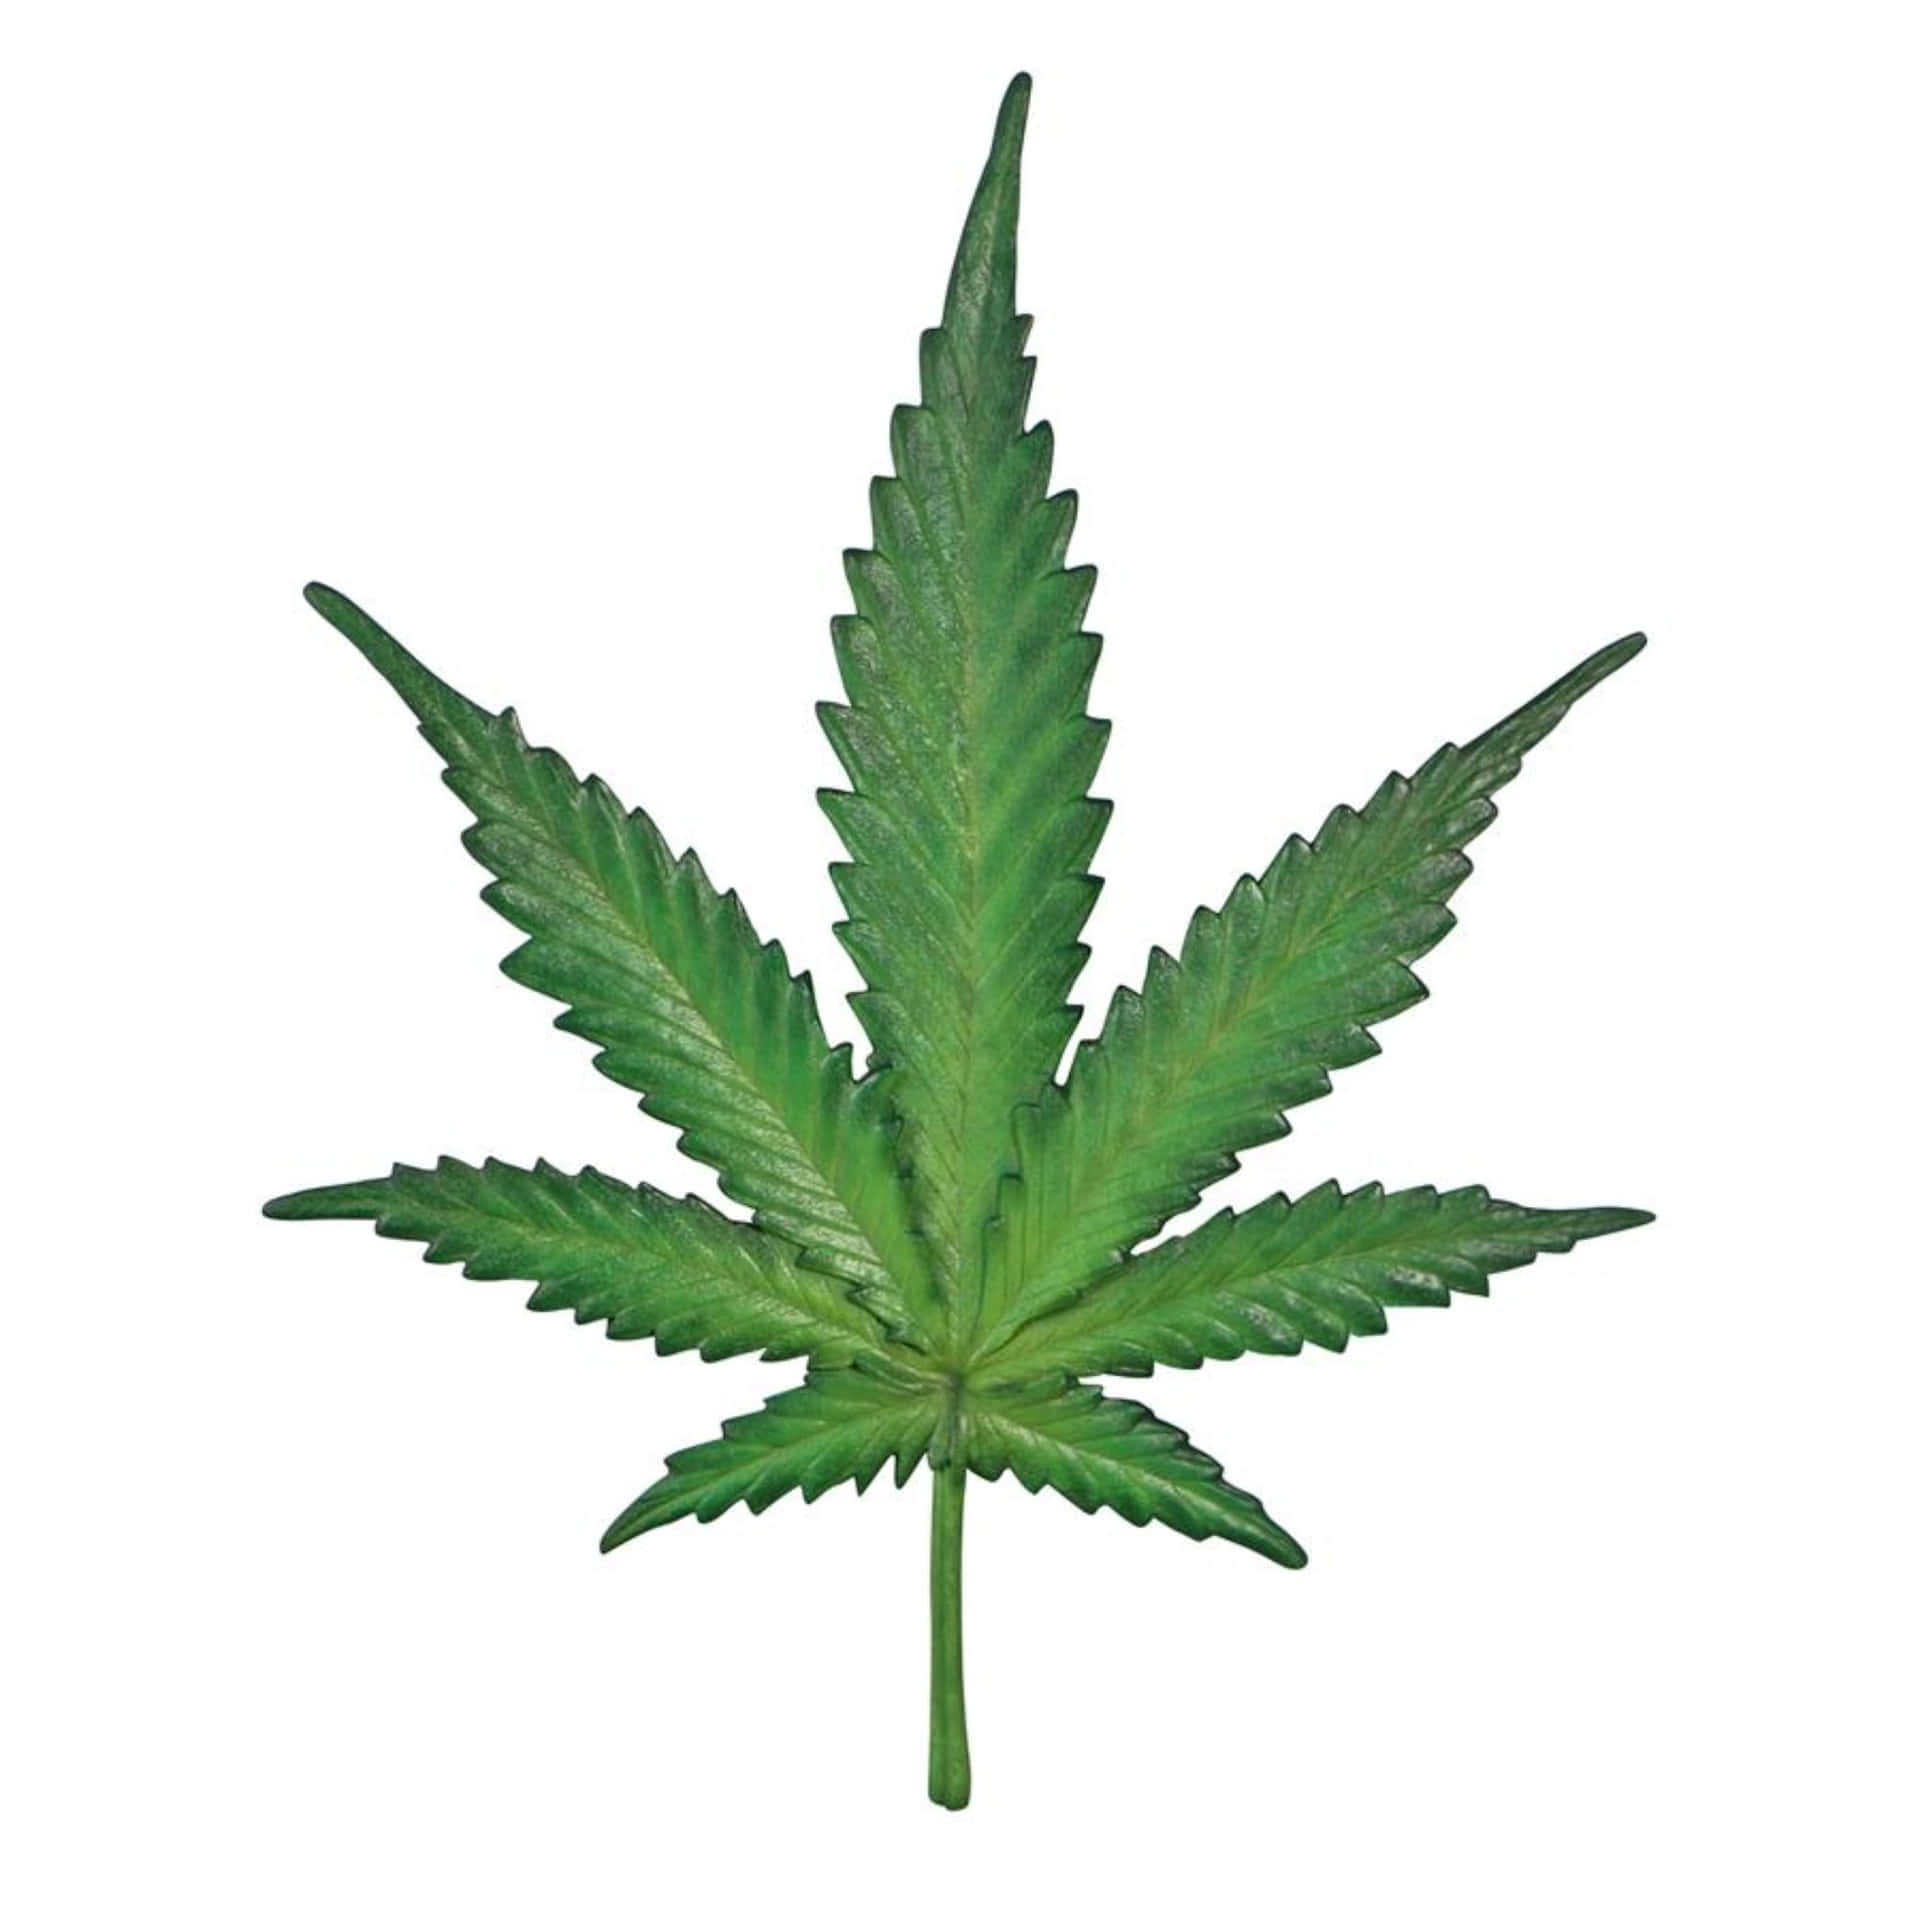 A Green Marijuana Leaf On A White Background